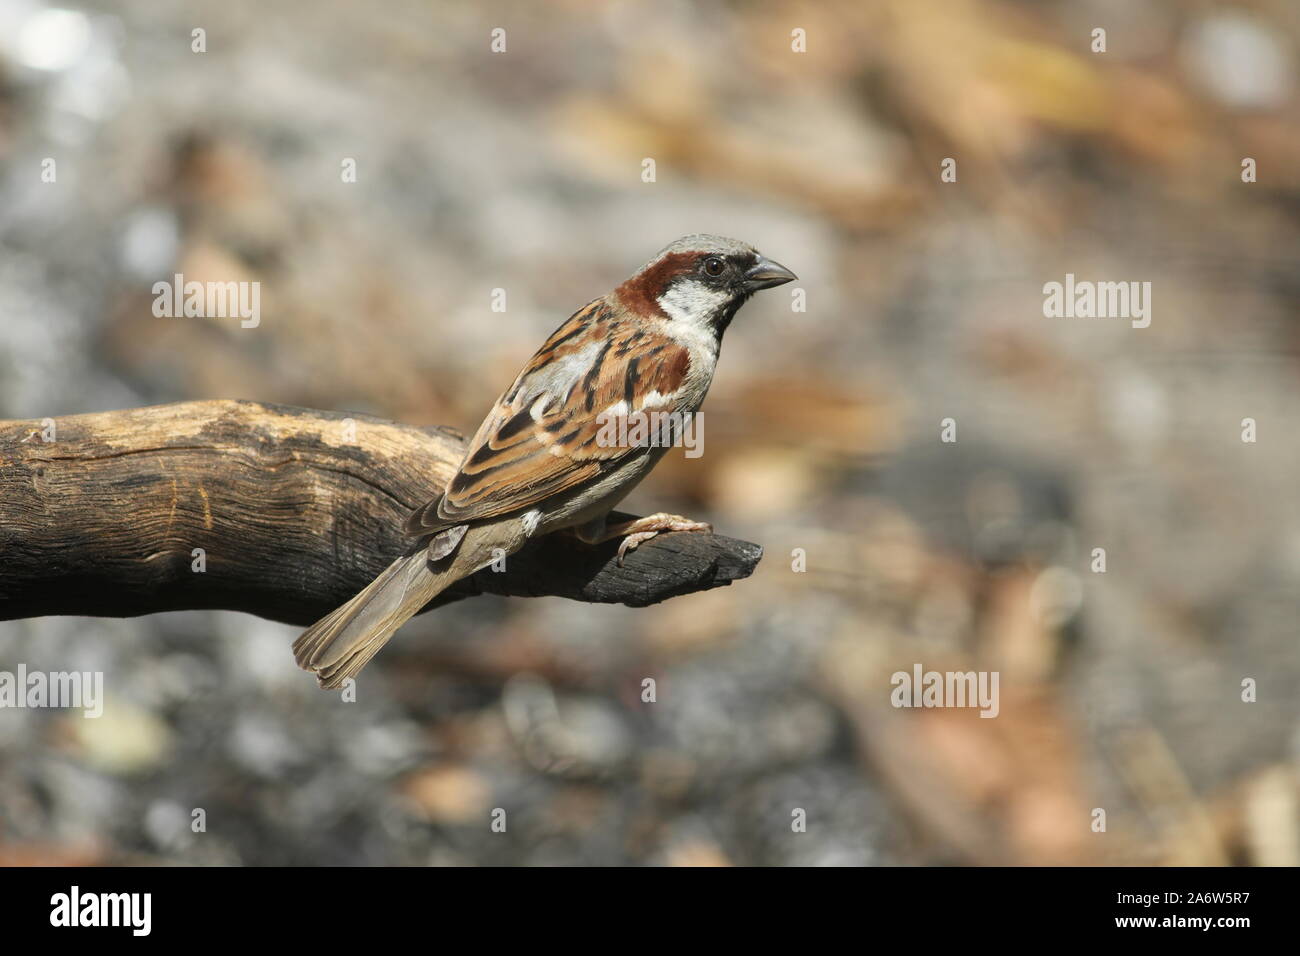 Gorrian Vogel sitzt auf einem trockenen Ast seine Augen manuvaring rund um die Umgebung. mit hellbraunen Feder mit einigen dunklen braunen Federn gesegnet. Stockfoto